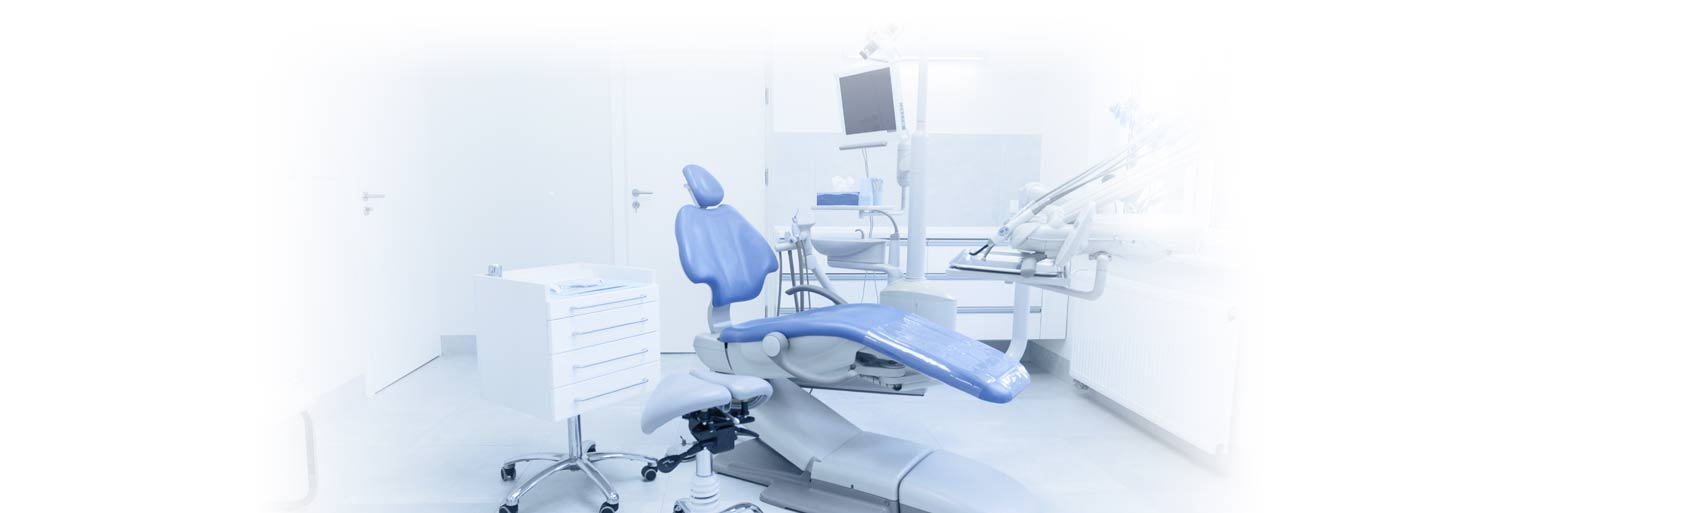 Monrovia Dentist | Omid Kashani DDS | Cosmetic Dentistry Monrovia CA 91016